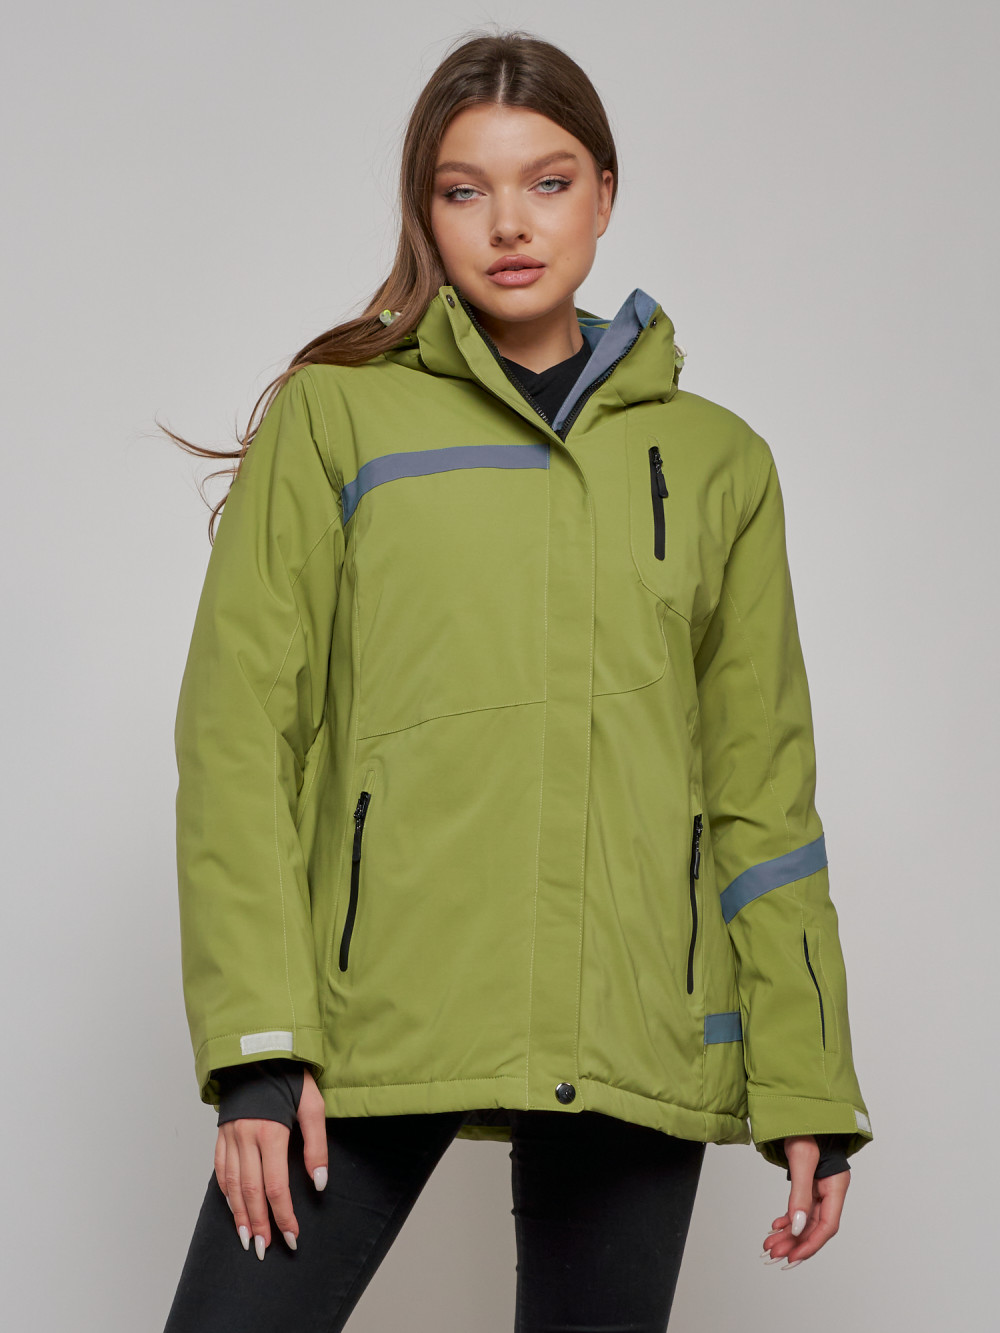 Купить оптом Горнолыжная куртка женская зимняя большого размера цвета хаки 3382Kh в Екатеринбурге